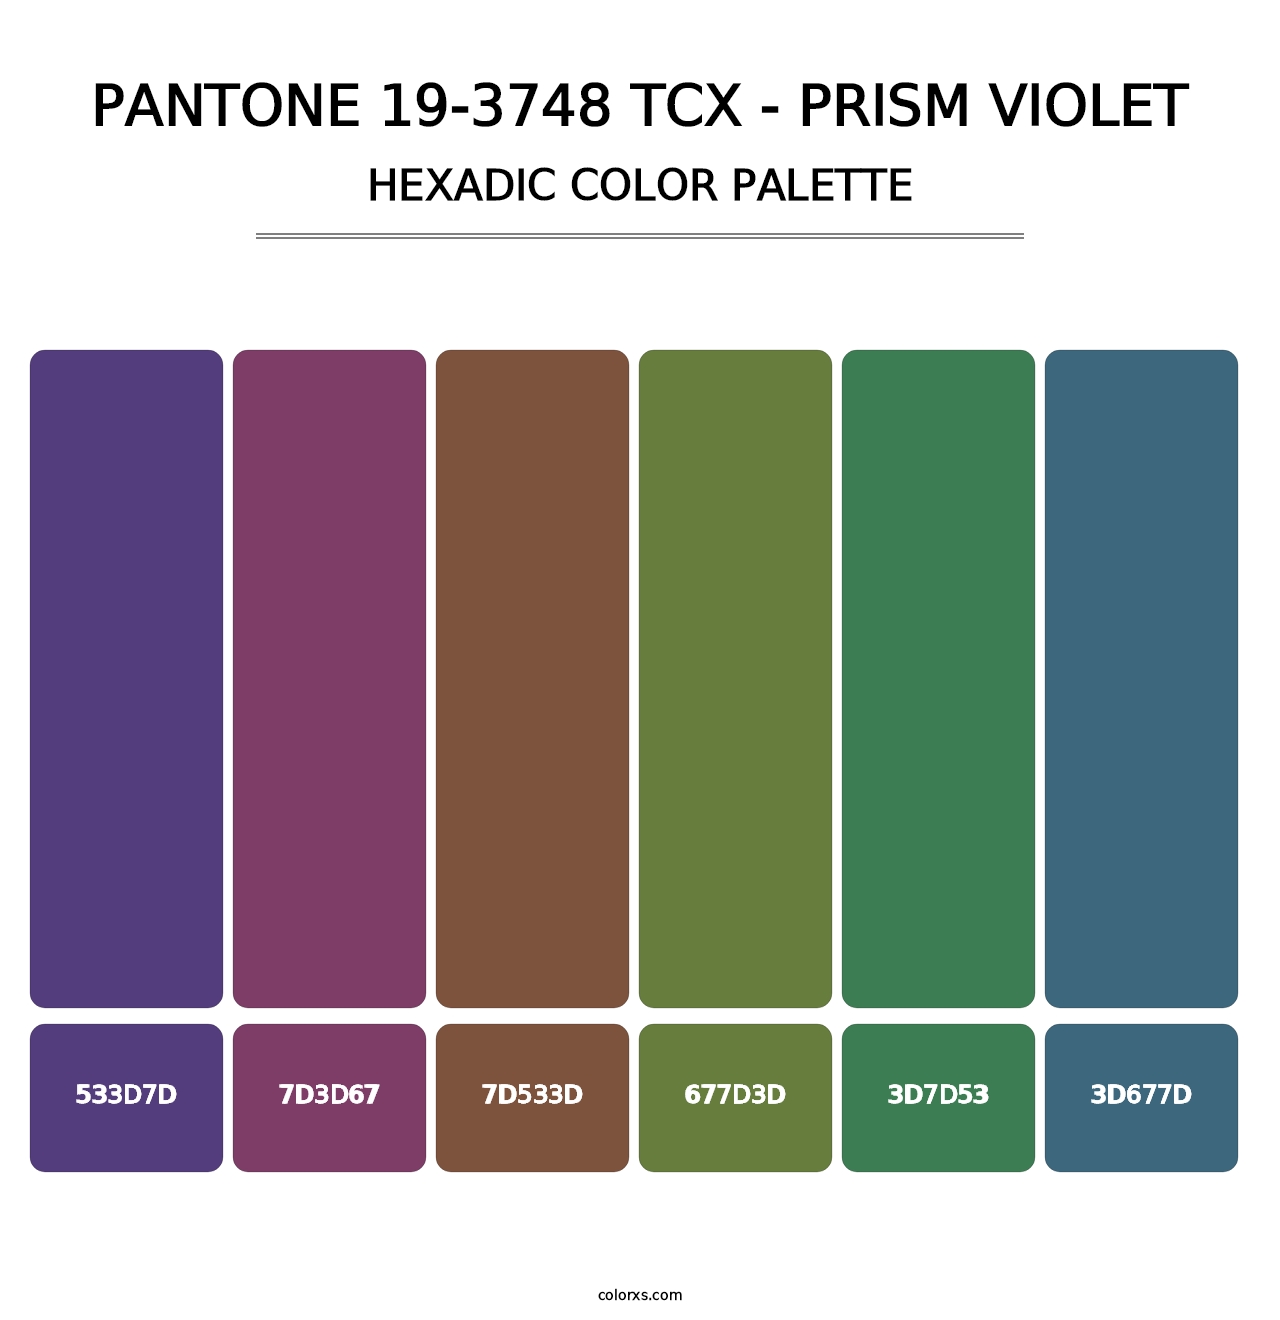 PANTONE 19-3748 TCX - Prism Violet - Hexadic Color Palette